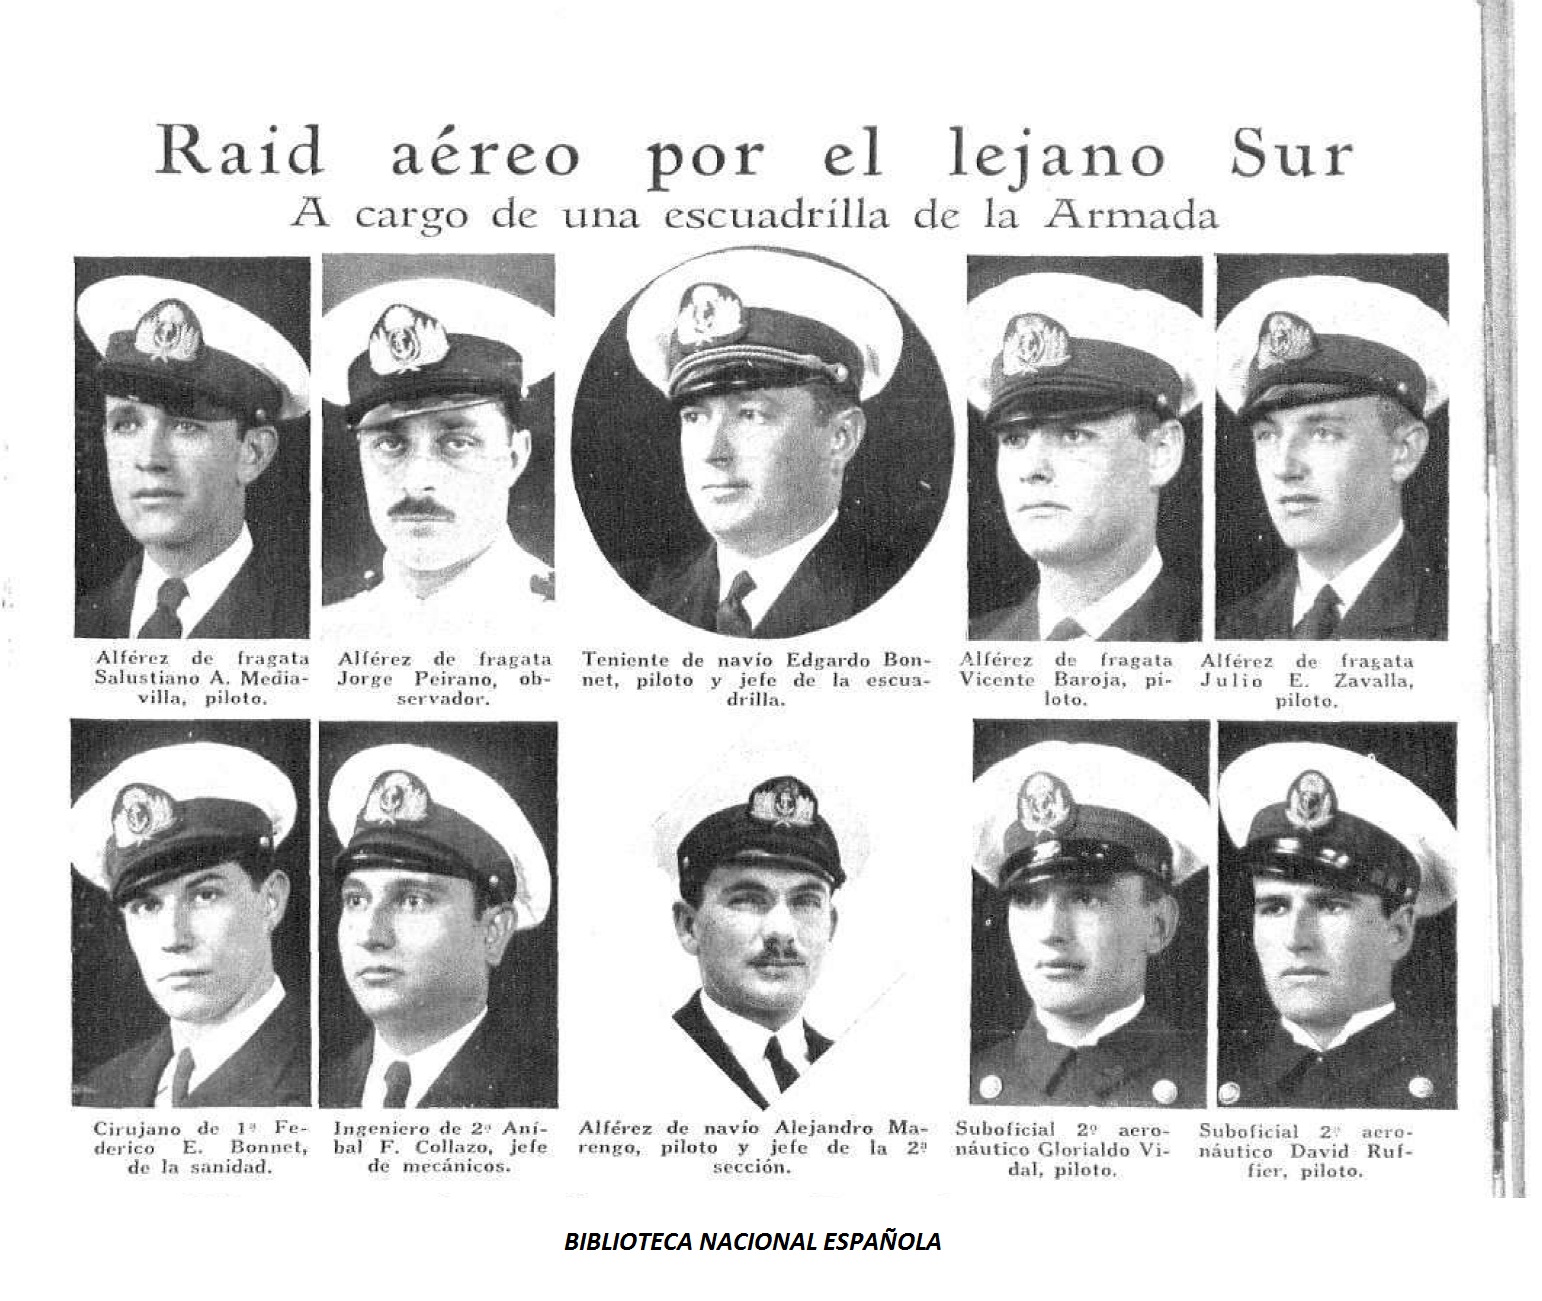 "Cara al centenario de la Aviación Naval Argentina"